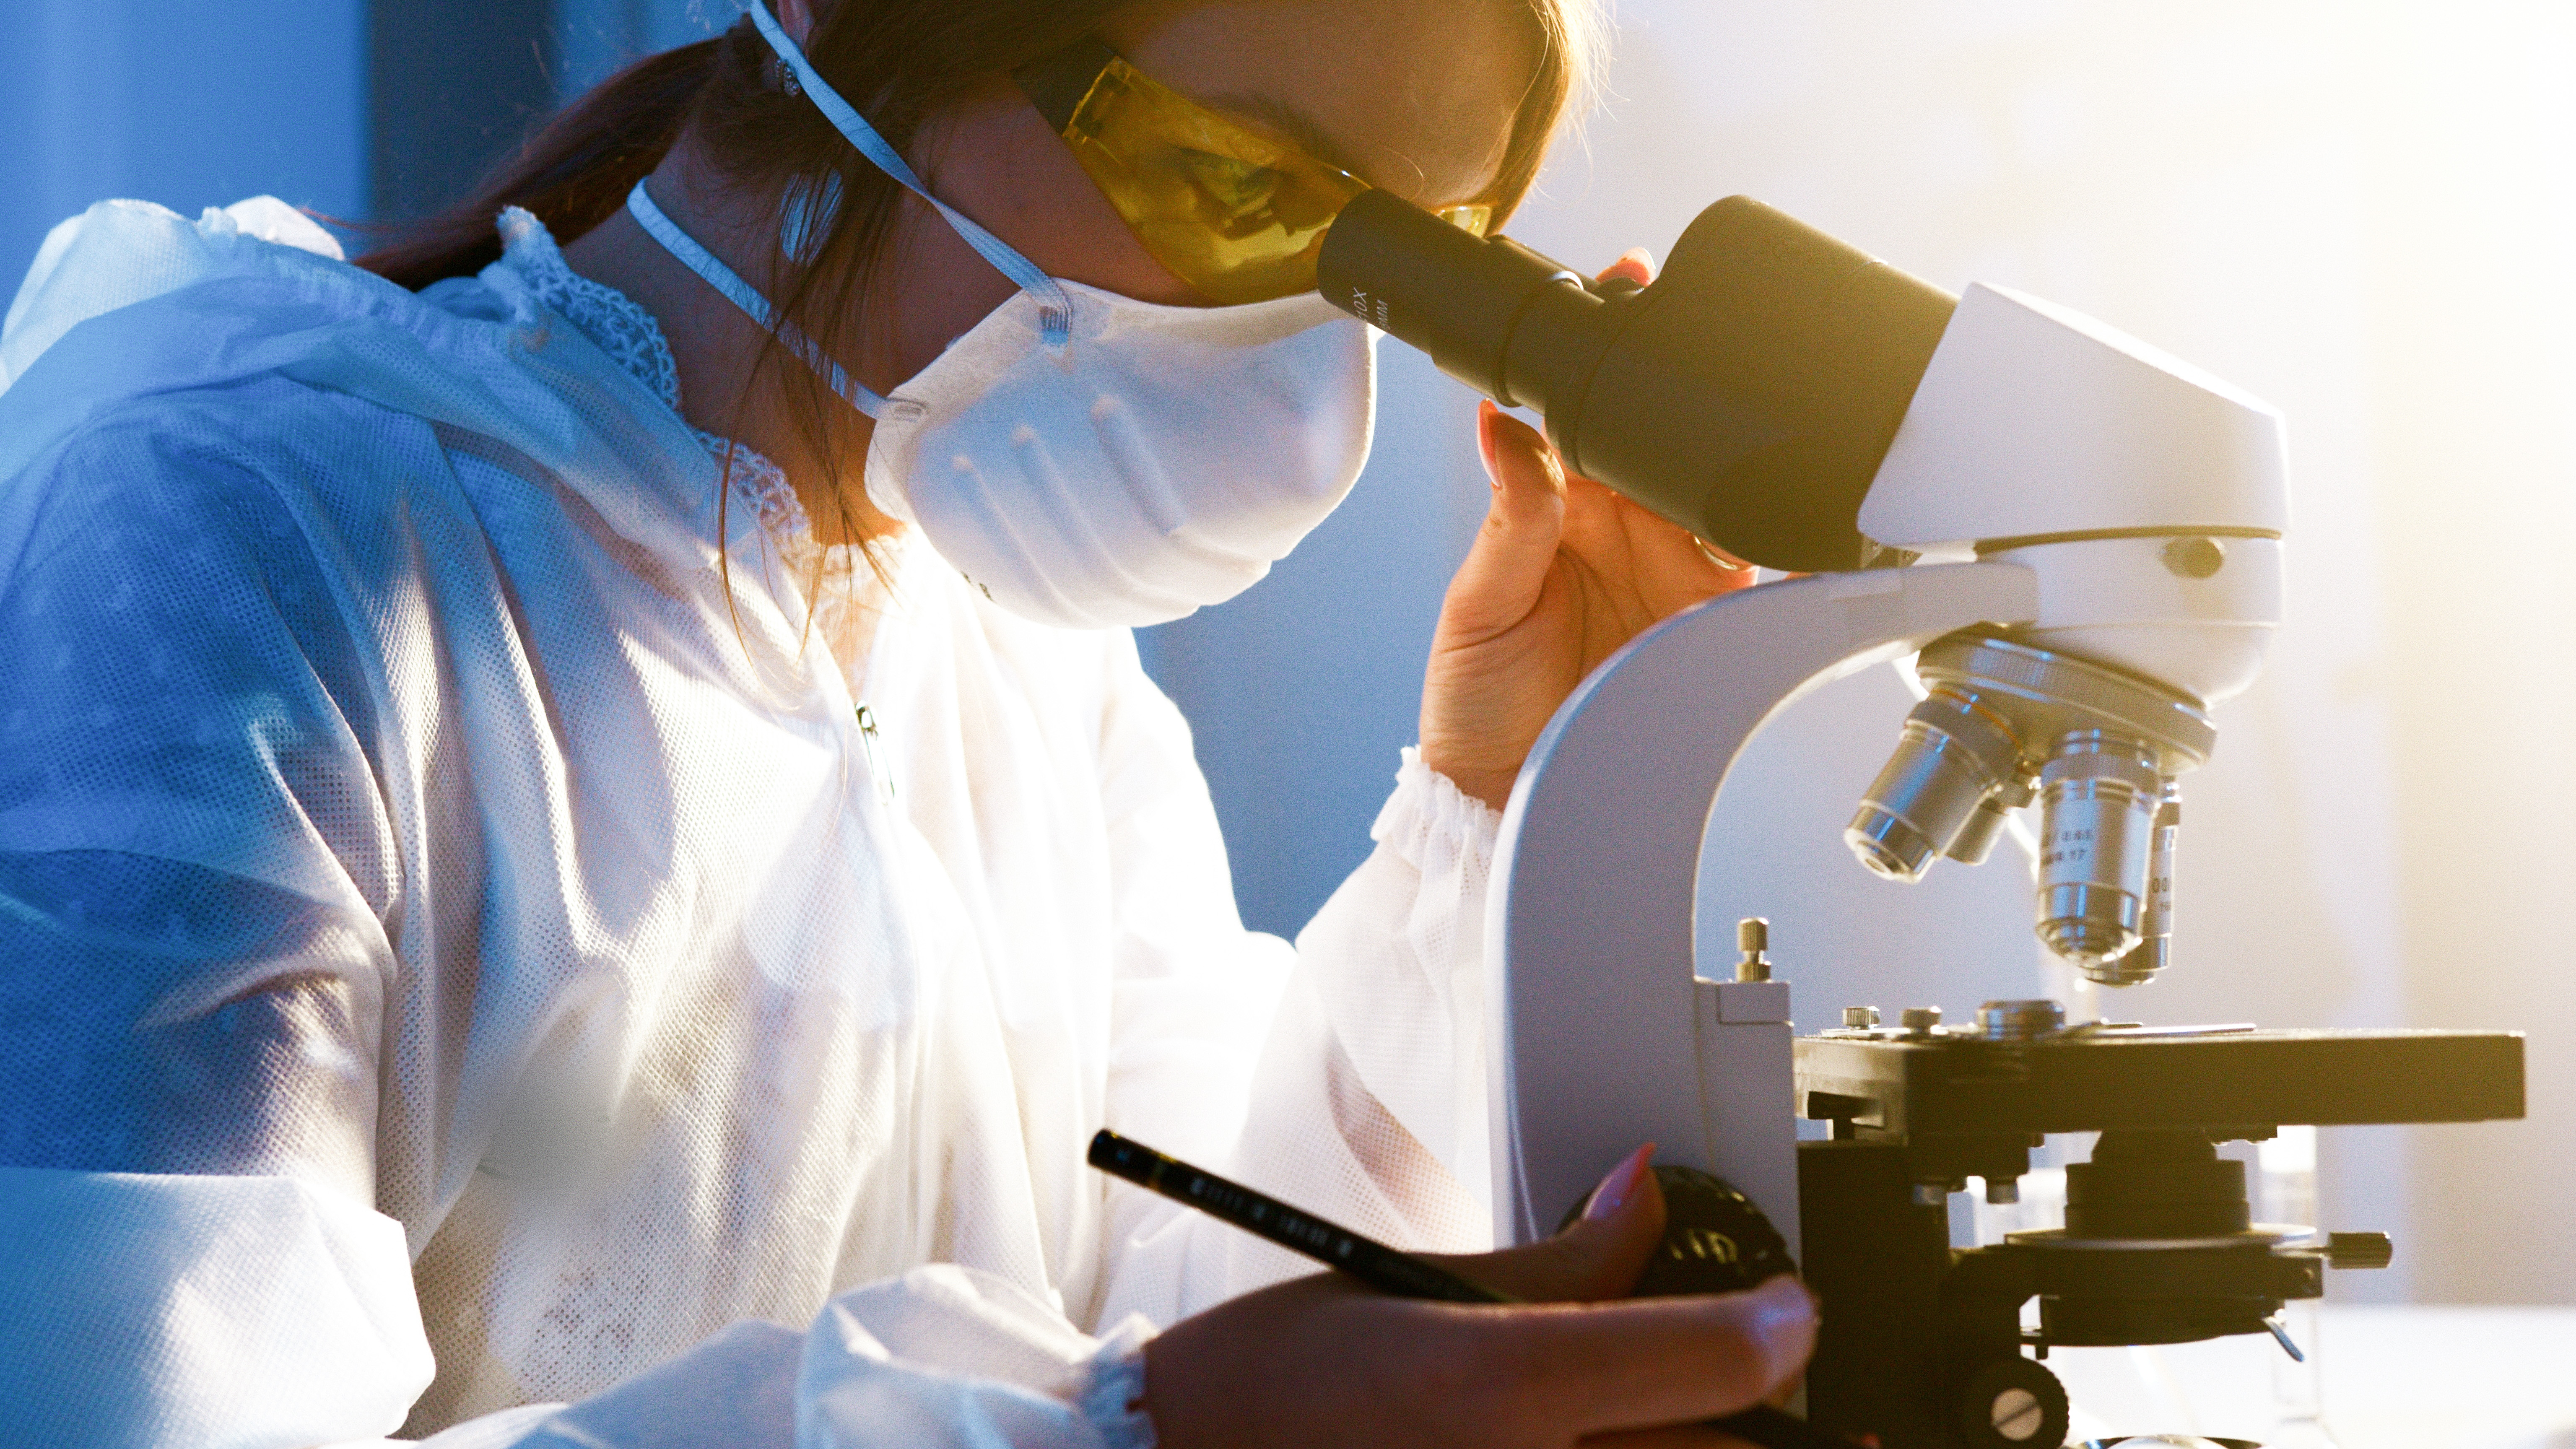 Das Bild zeigt eine Frau in Schutzkleidung, die durch ein Mikroskop schaut und in der rechten Hand einen Stift hält.